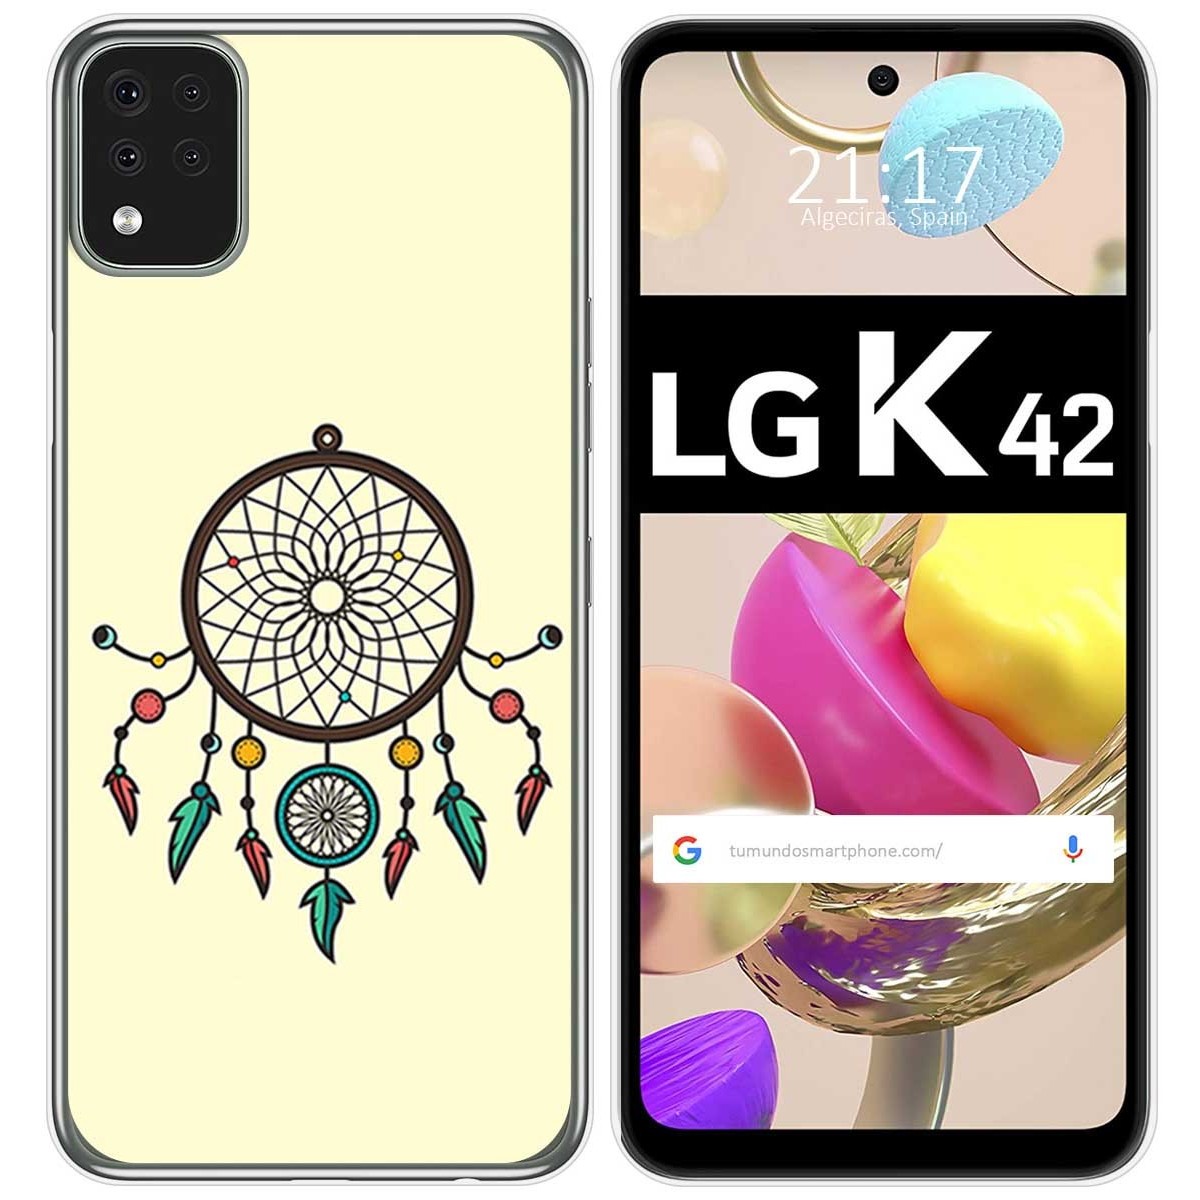 Funda Gel Tpu para LG K42 diseño Atrapasueños Dibujos